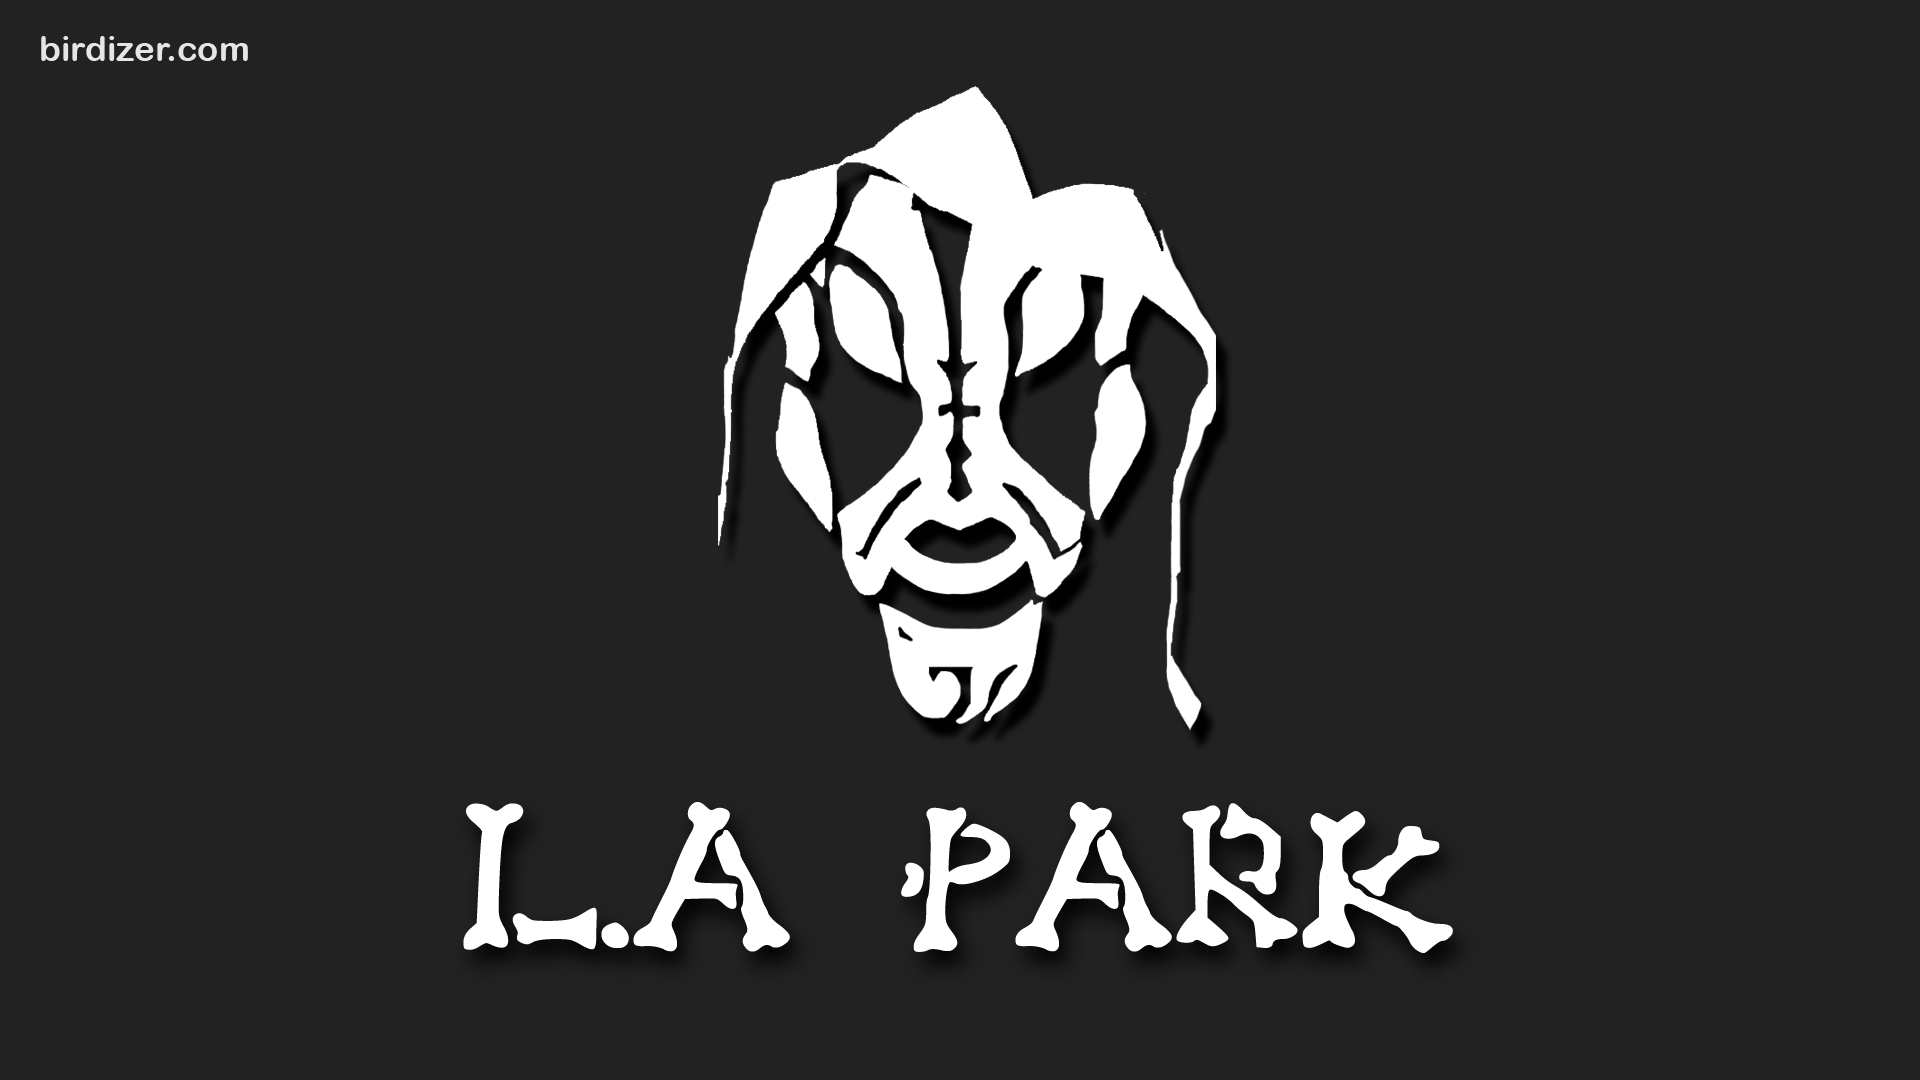 L.A Park máscara wallpaper. Imagenes de lucha libre, Lucha libre